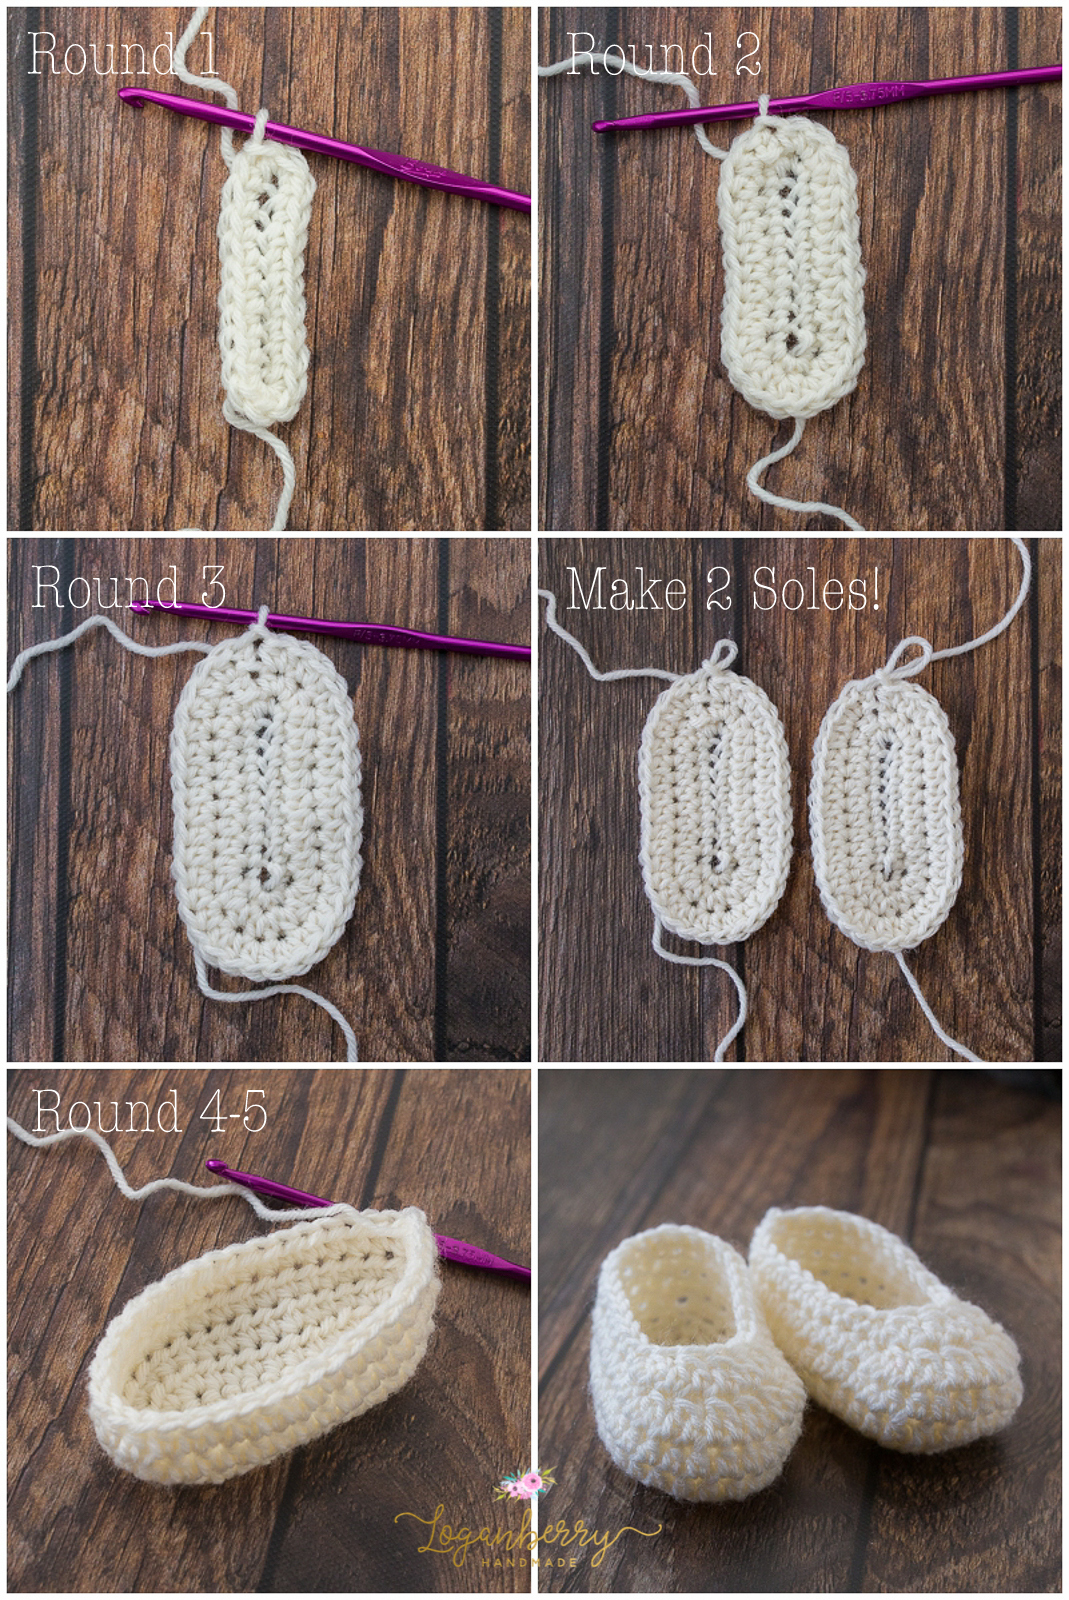 crochet shoes for girl